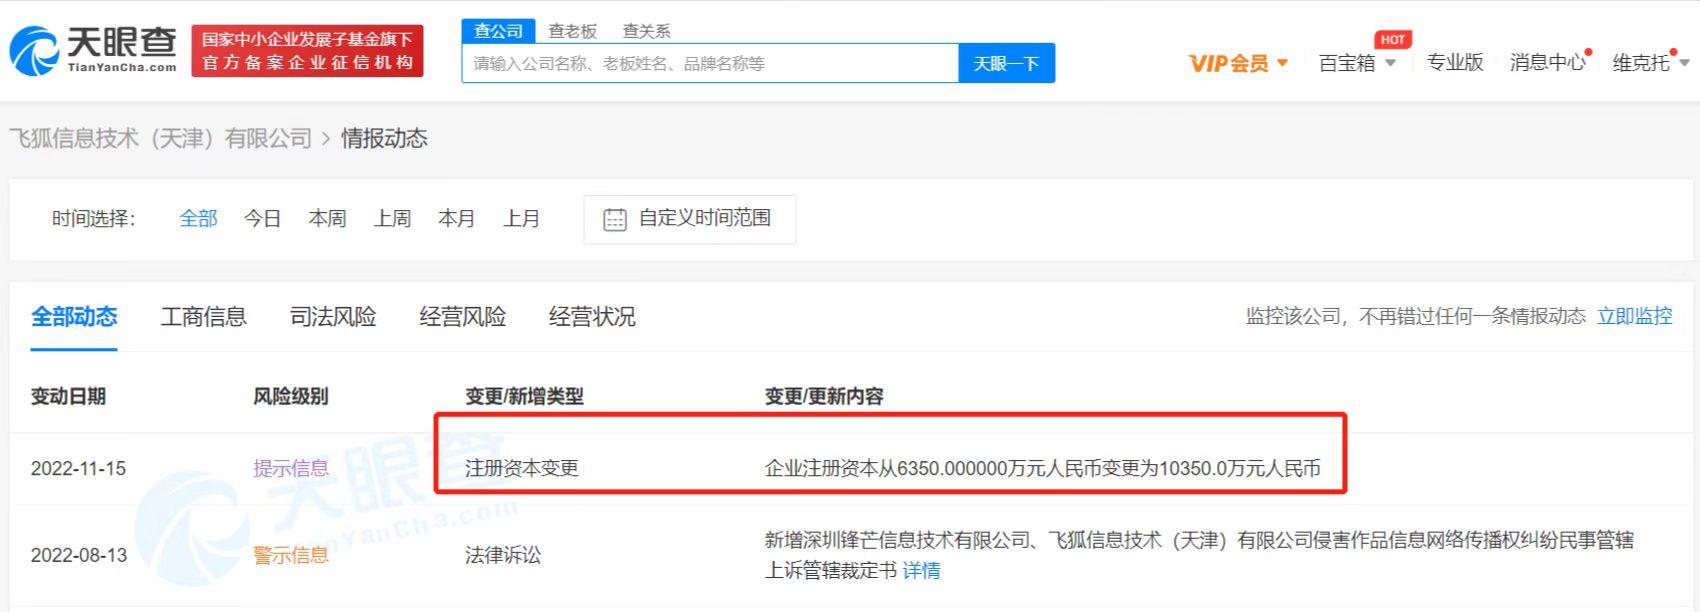 搜狐视频增资至1亿 增幅63%